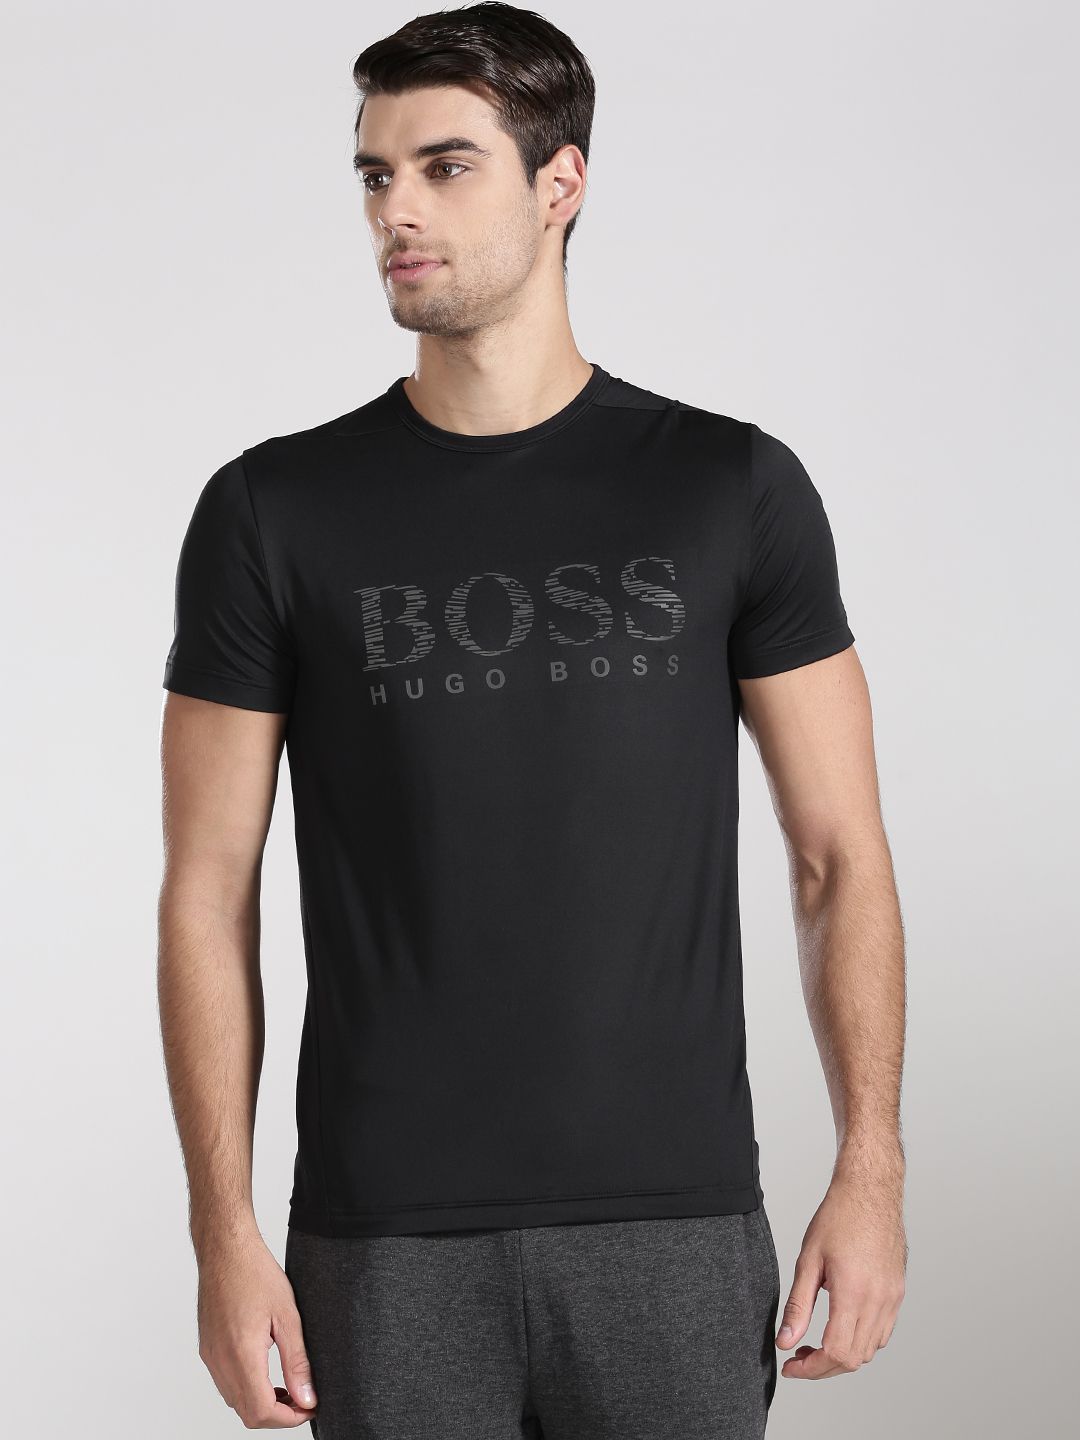 boss t shirts india